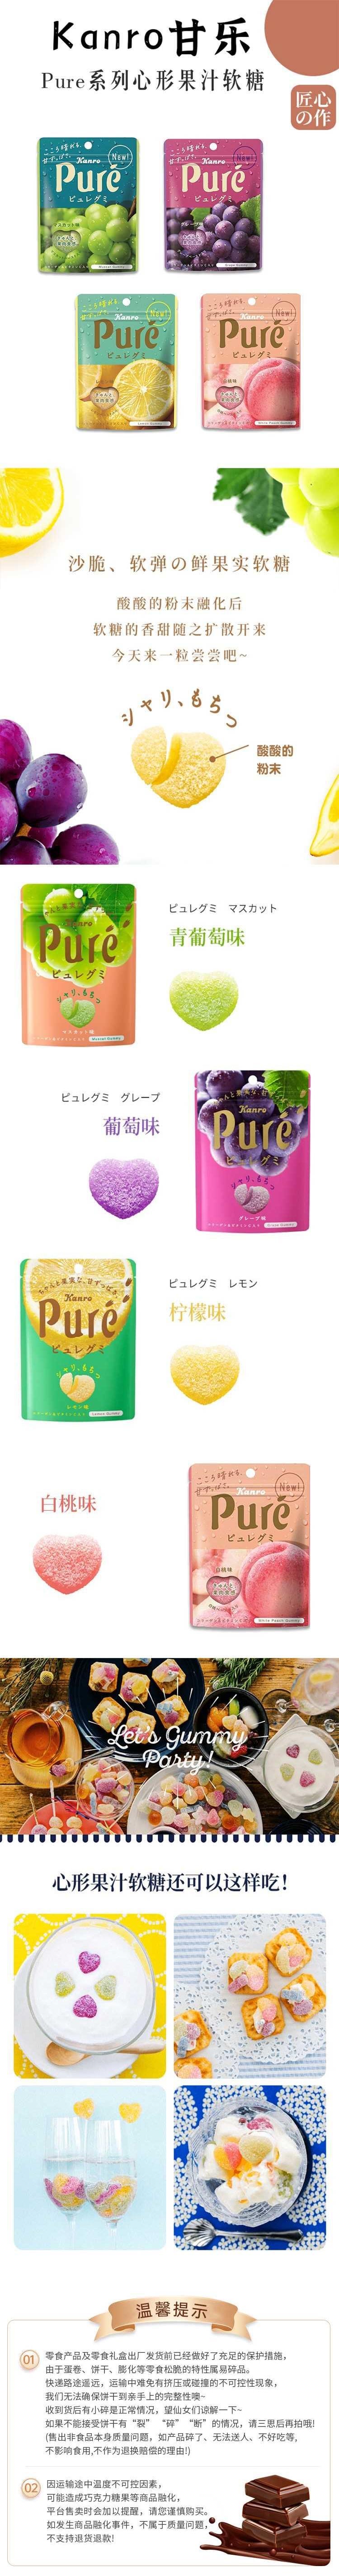 【日本直郵】KANRO甘樂 Pure果肉汁軟糖56g 橘子口味